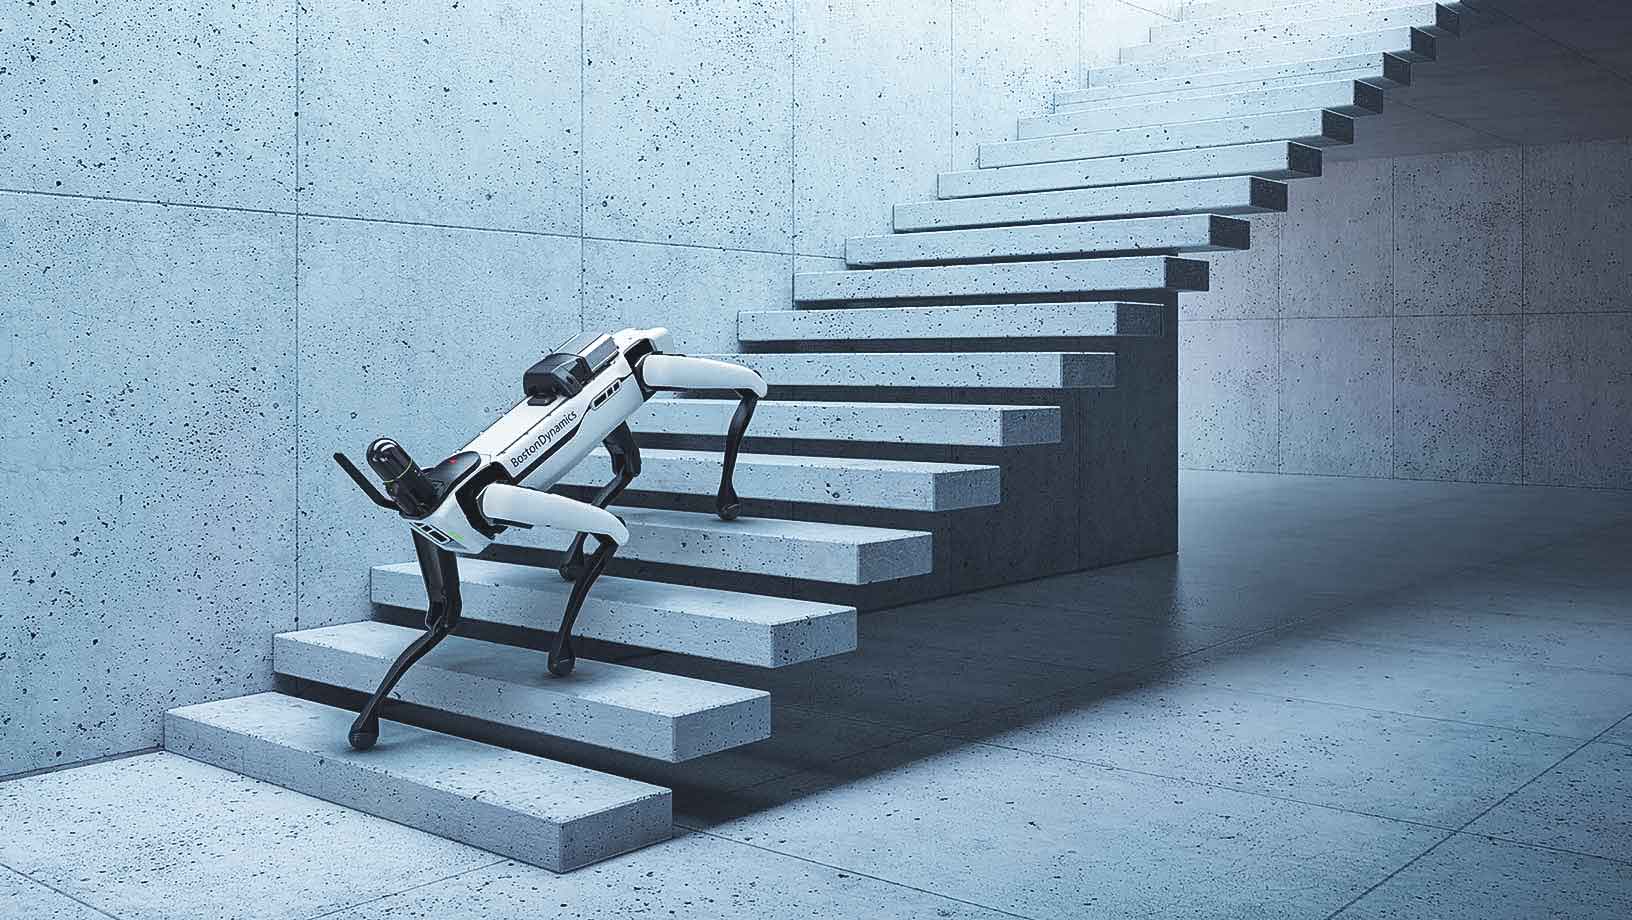 Boston Dynamics' SPOT robot climbing a staircase using Hexagon's BLK ARC robotic integration